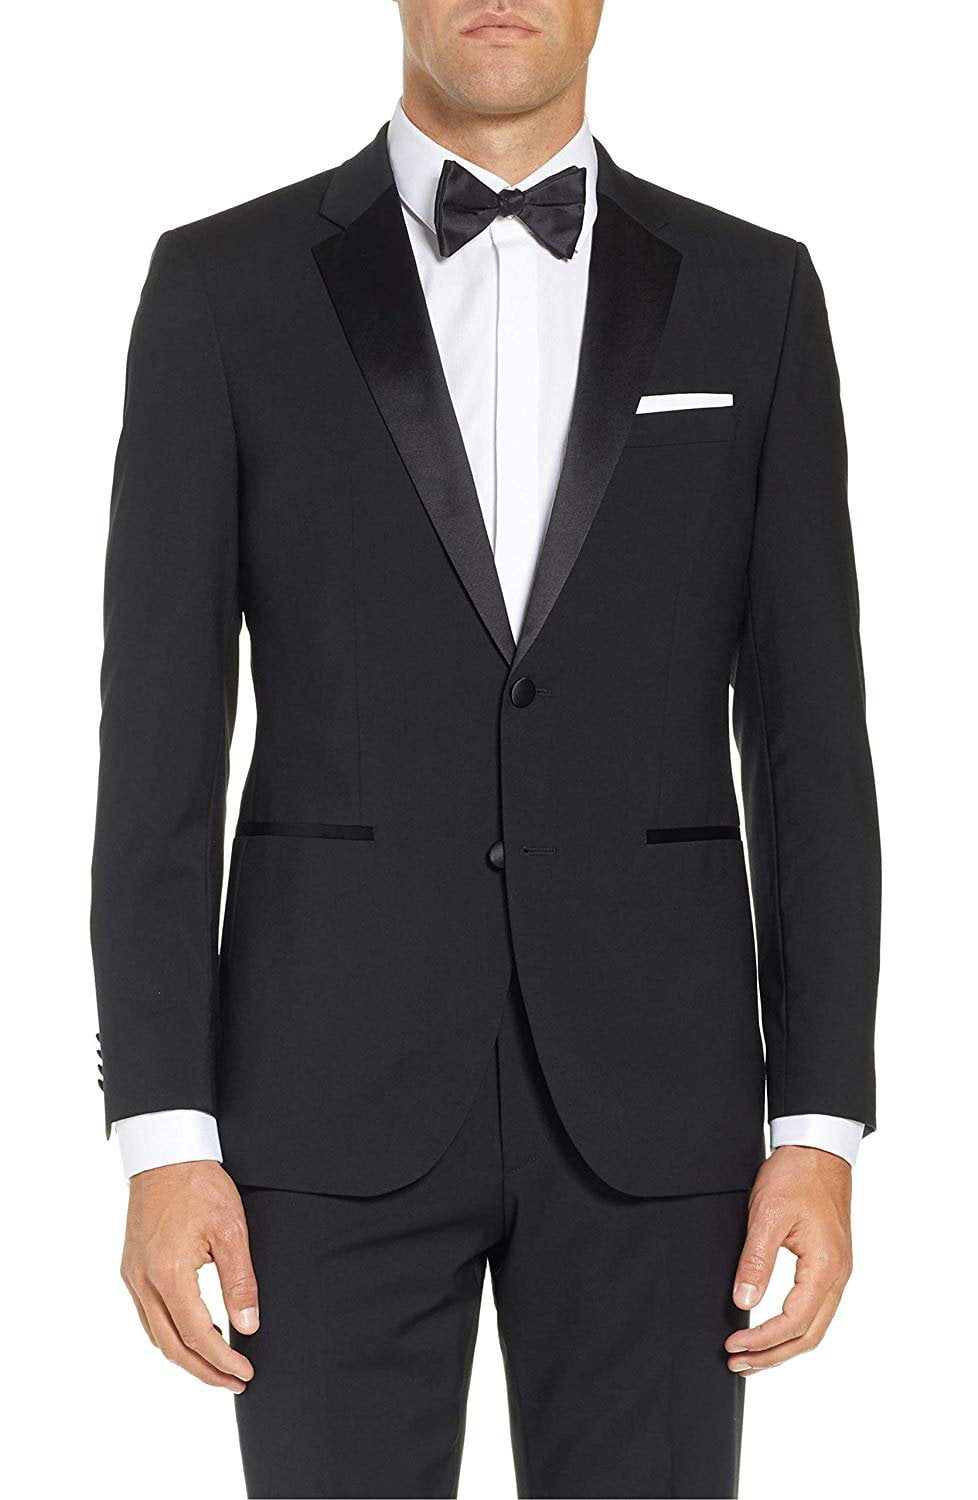 Caravelli Men's 60501 Slim Fit Two-Piece Notch Lapel Tuxedo Suit Set ...